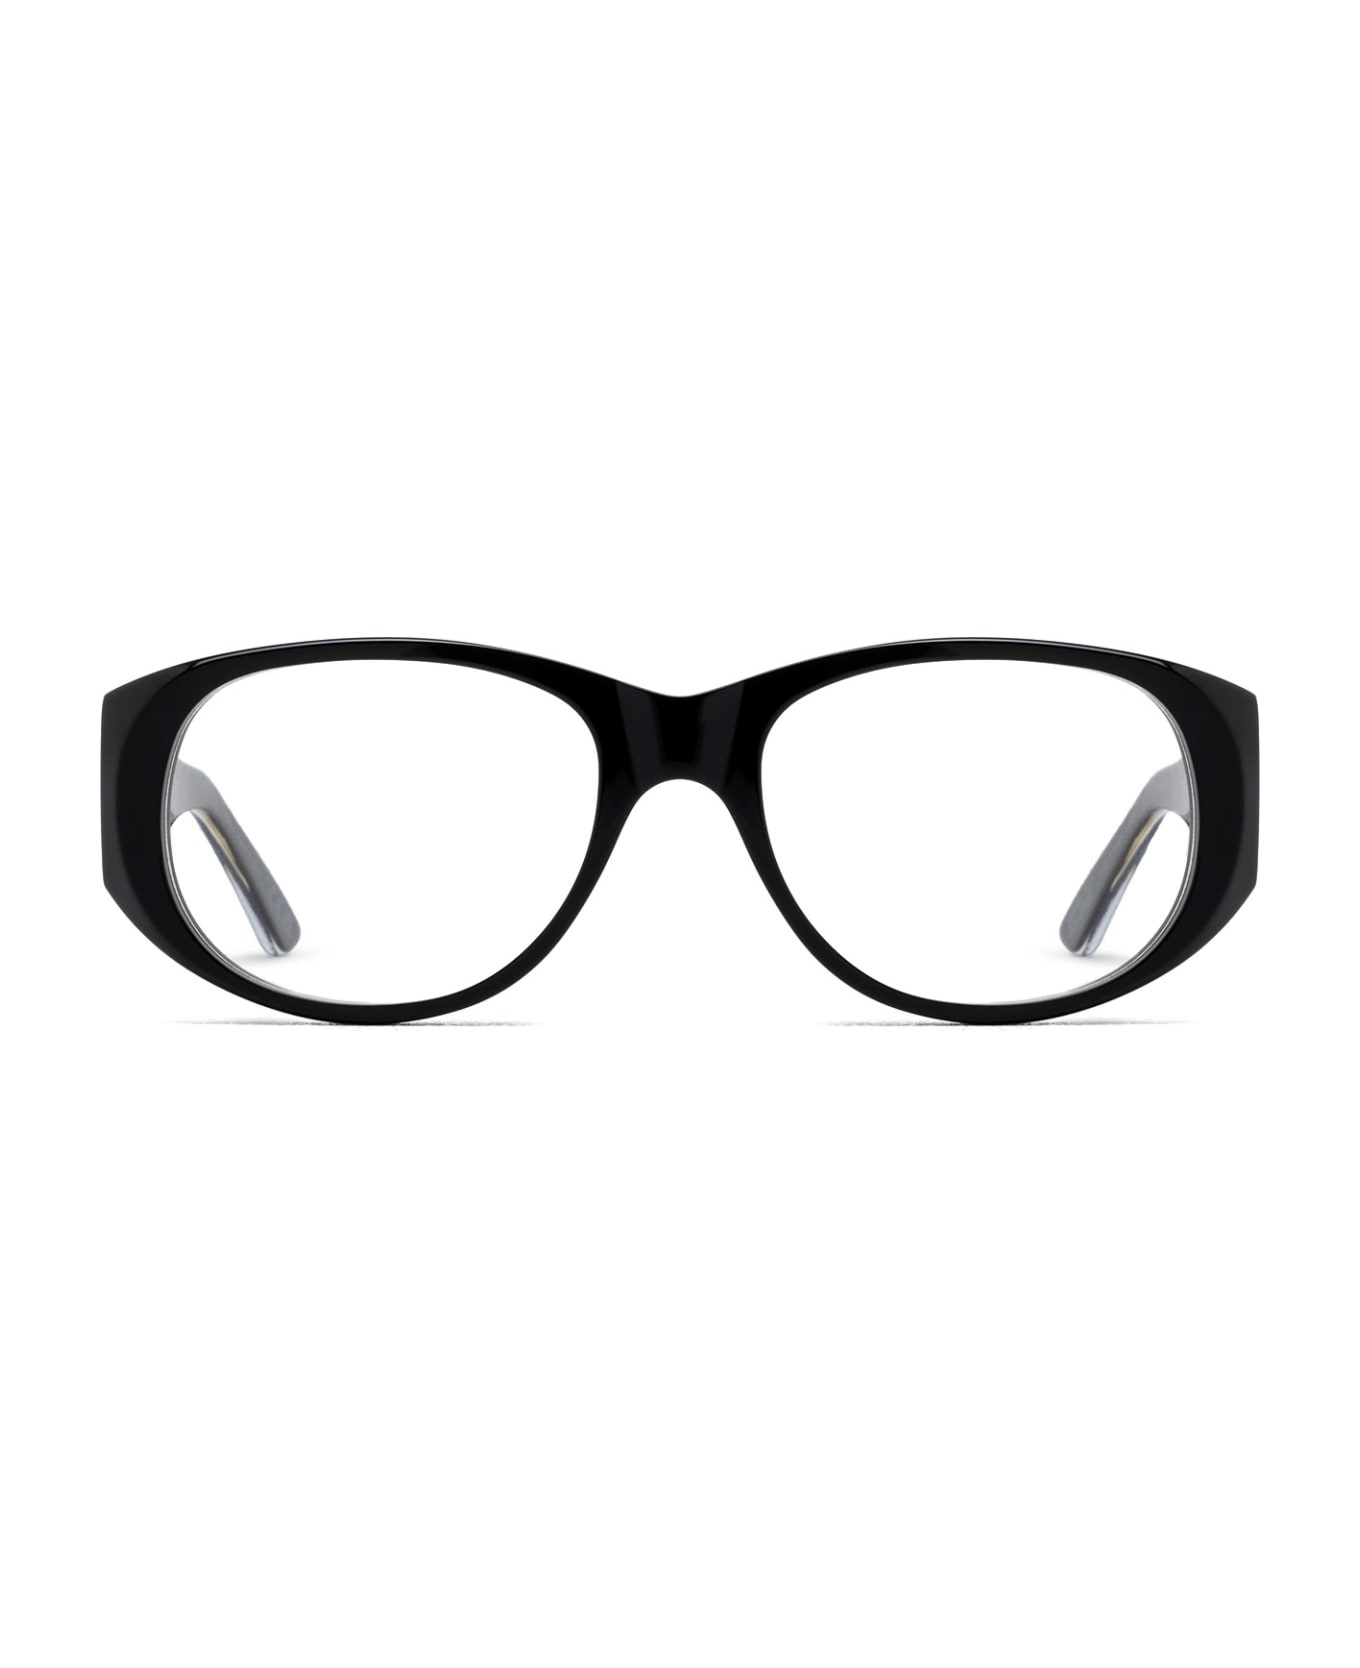 Marni Eyewear Orinoco Optical Black Glasses - Black アイウェア